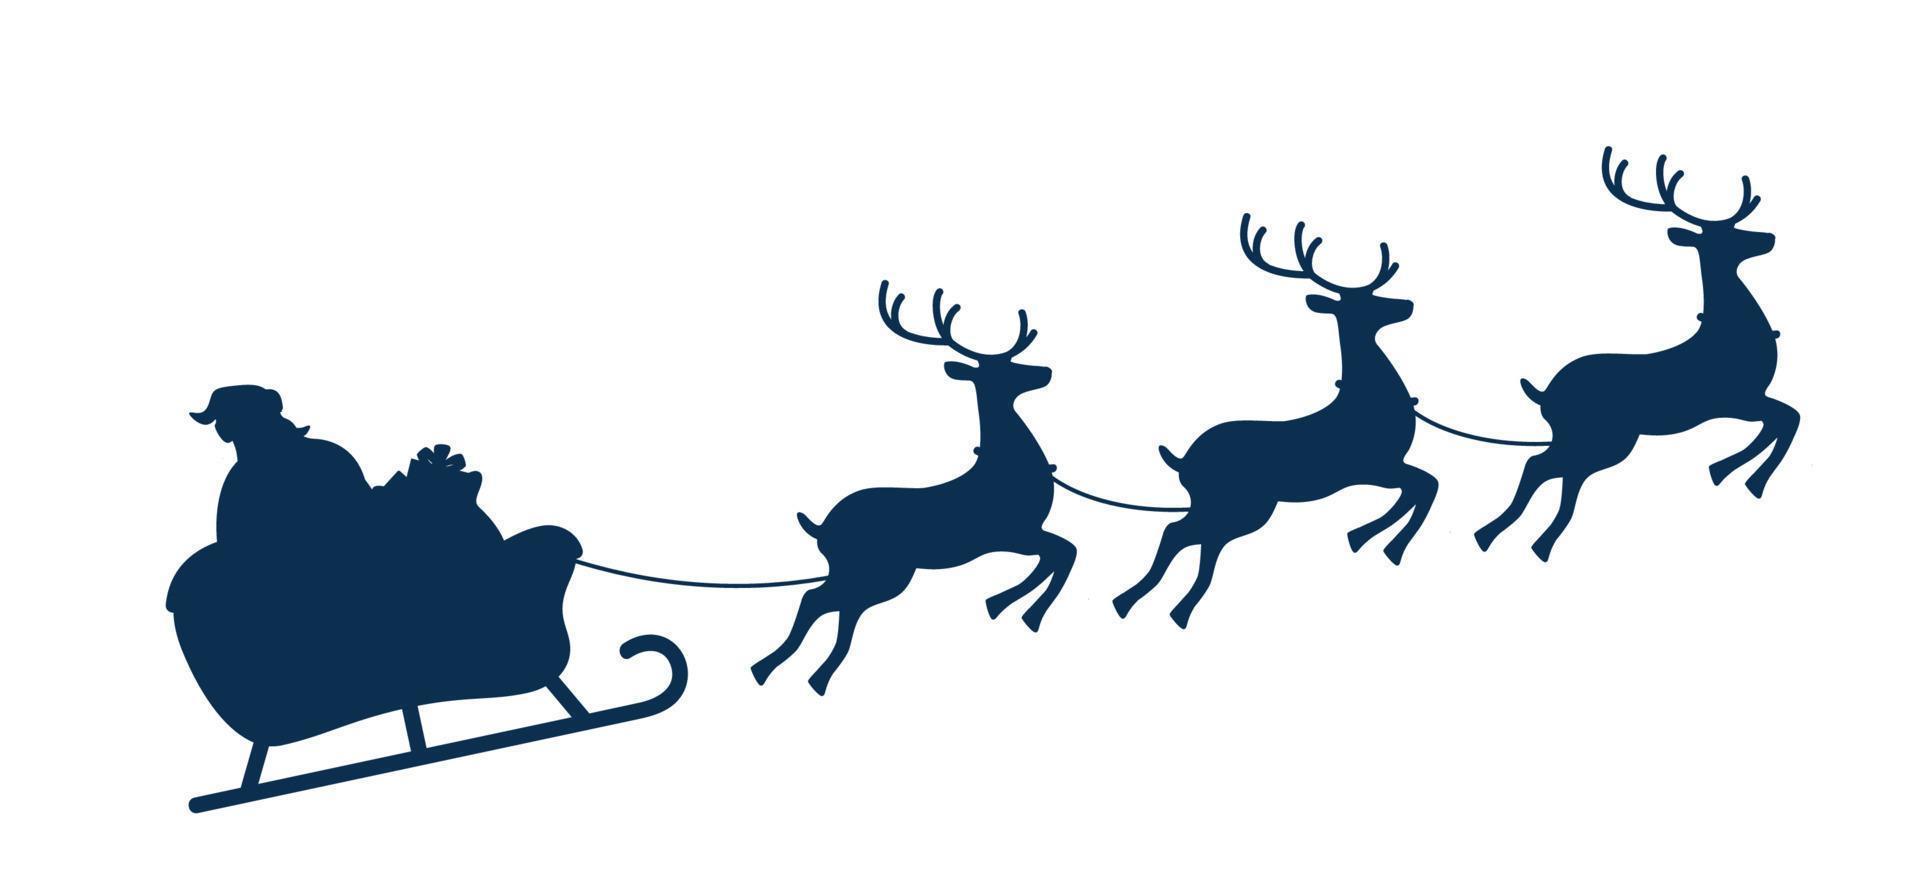 de kerstman Aan slee en zijn rendieren, monochroom silhouet. Kerstmis groet kaart vector illustratie.